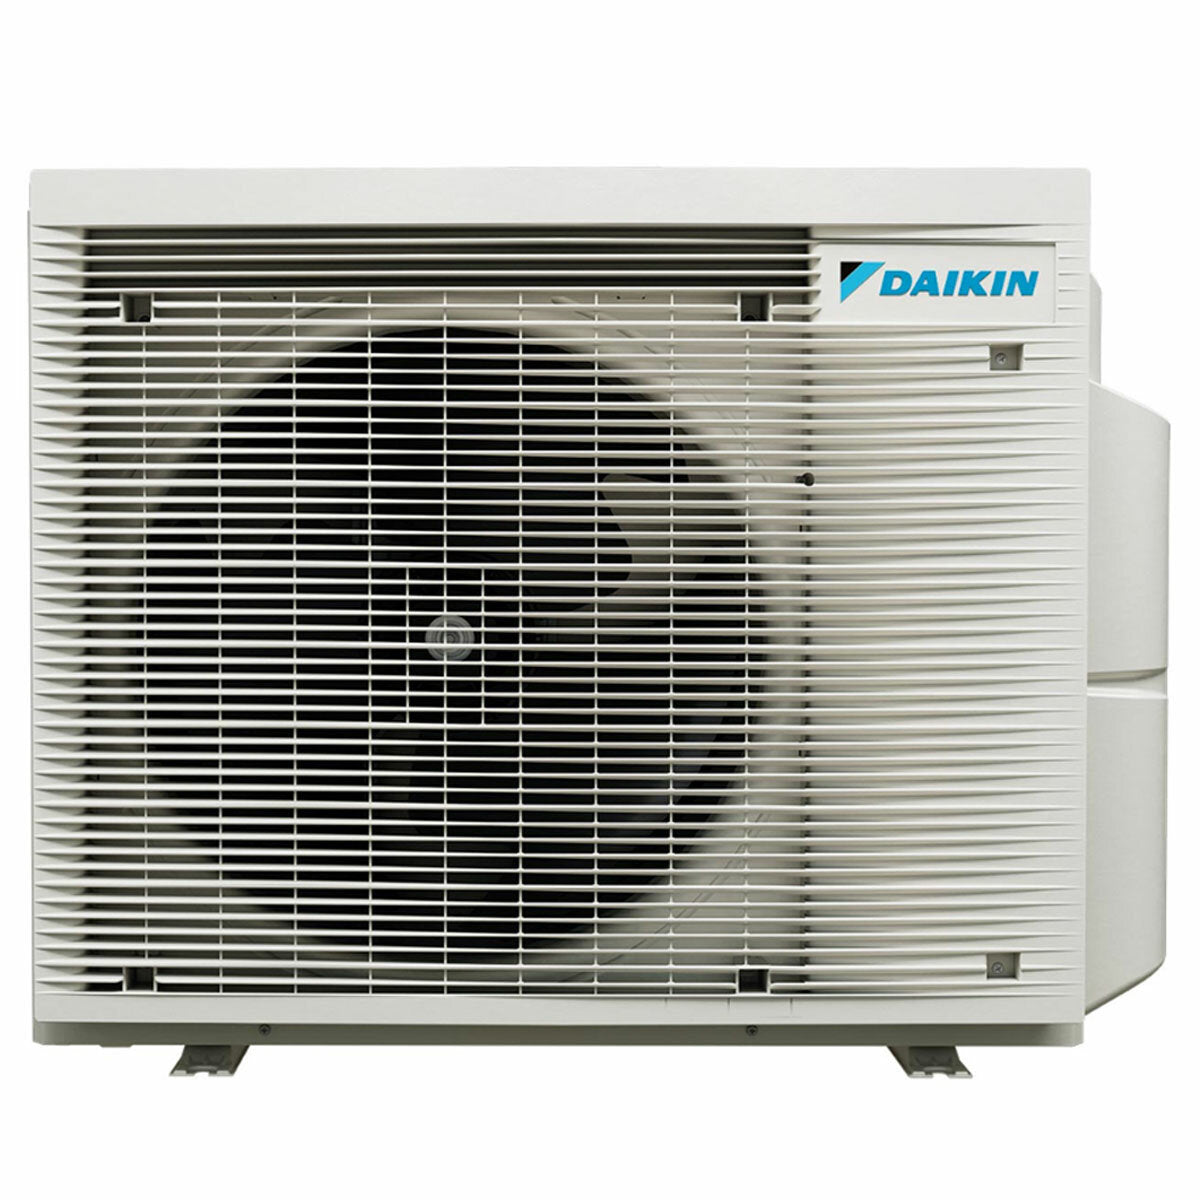 Daikin Emura 3 trial split air conditioner 7000+7000+15000 BTU inverter A+ wifi outdoor unit 6.8 kW White